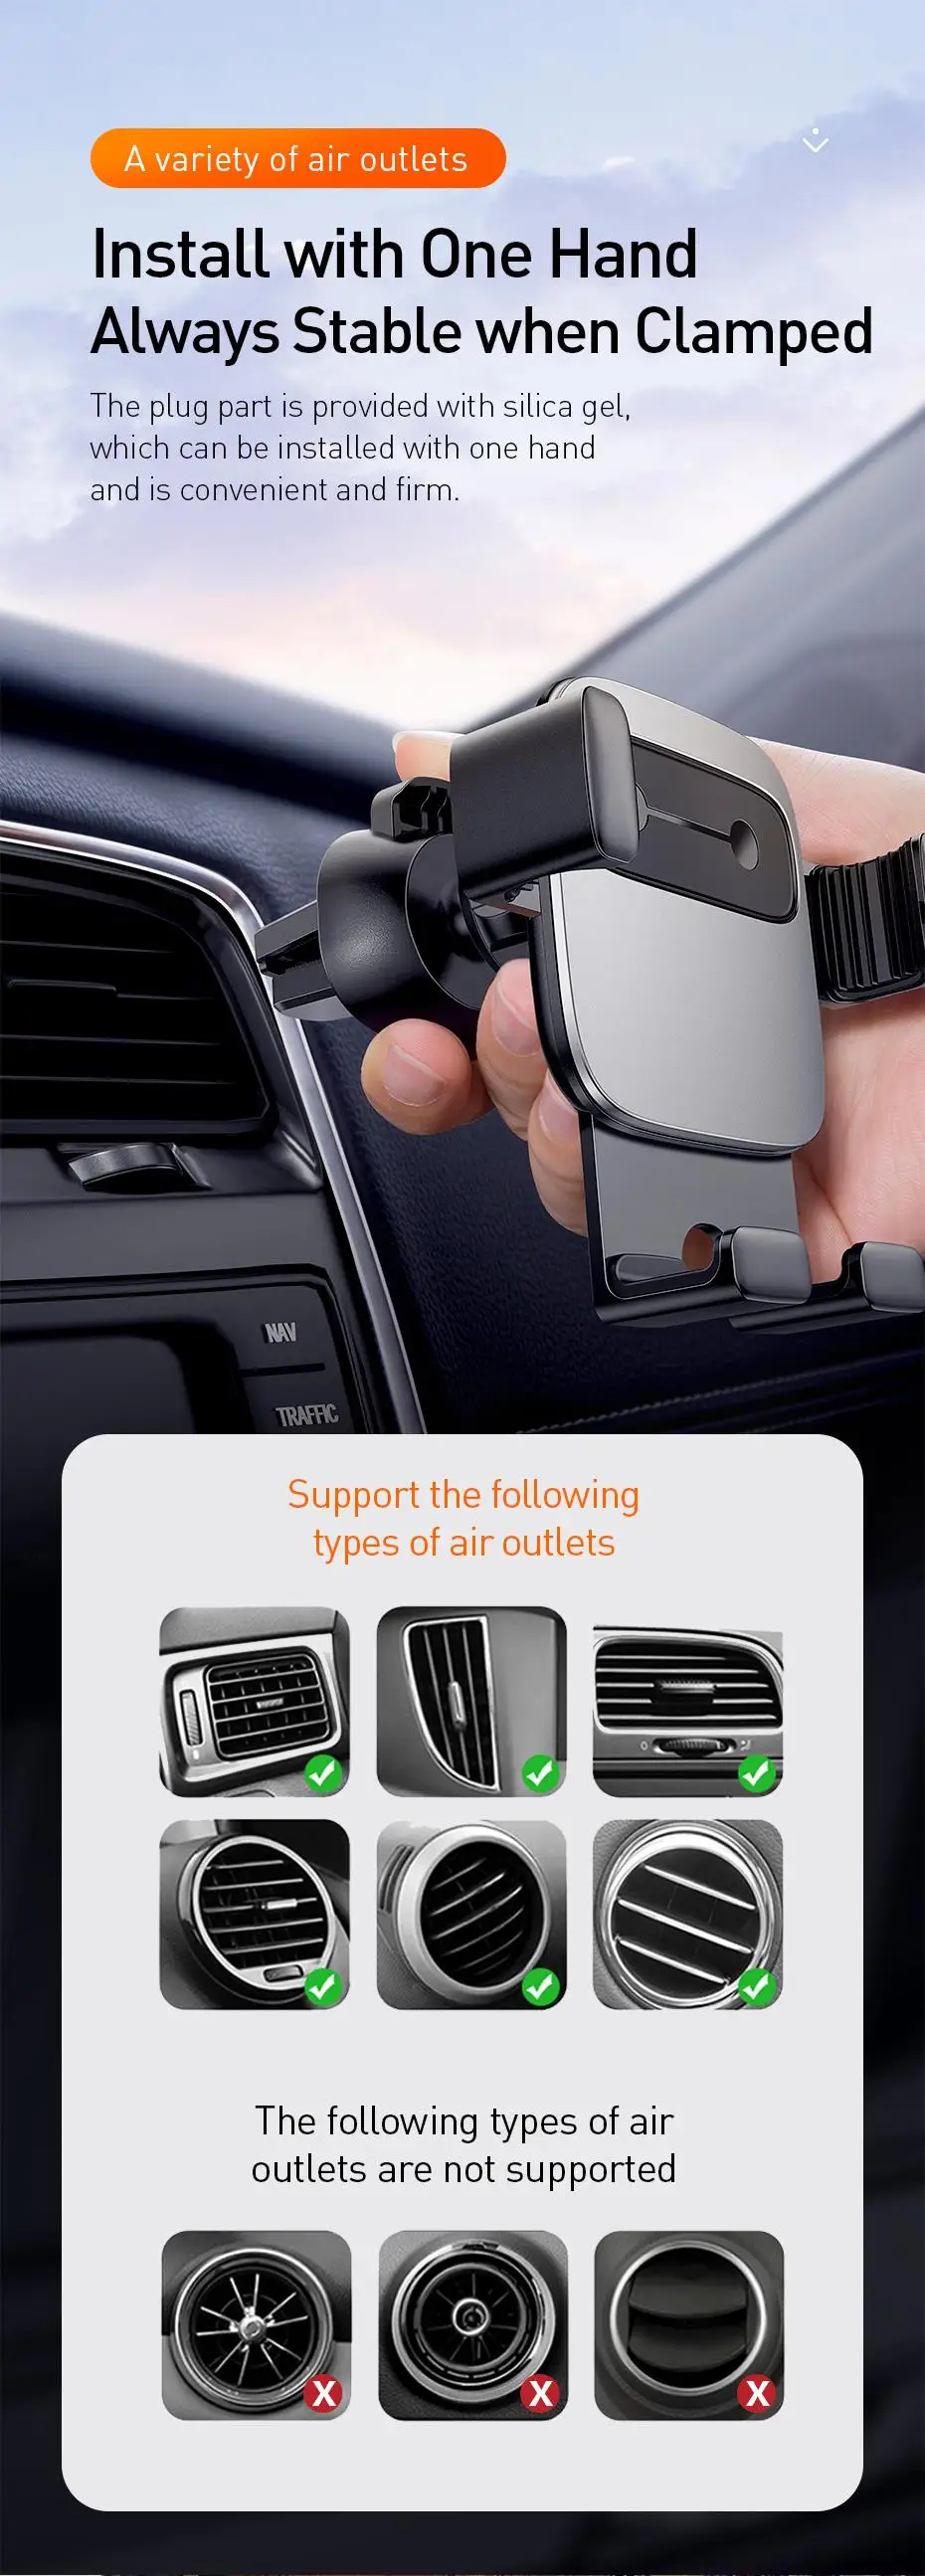 Автомобильный держатель Baseus для iPhone samsung huawei Xiaomi Gravity Автомобильный держатель для телефона в автомобиле держатель для мобильного телефона Подставка